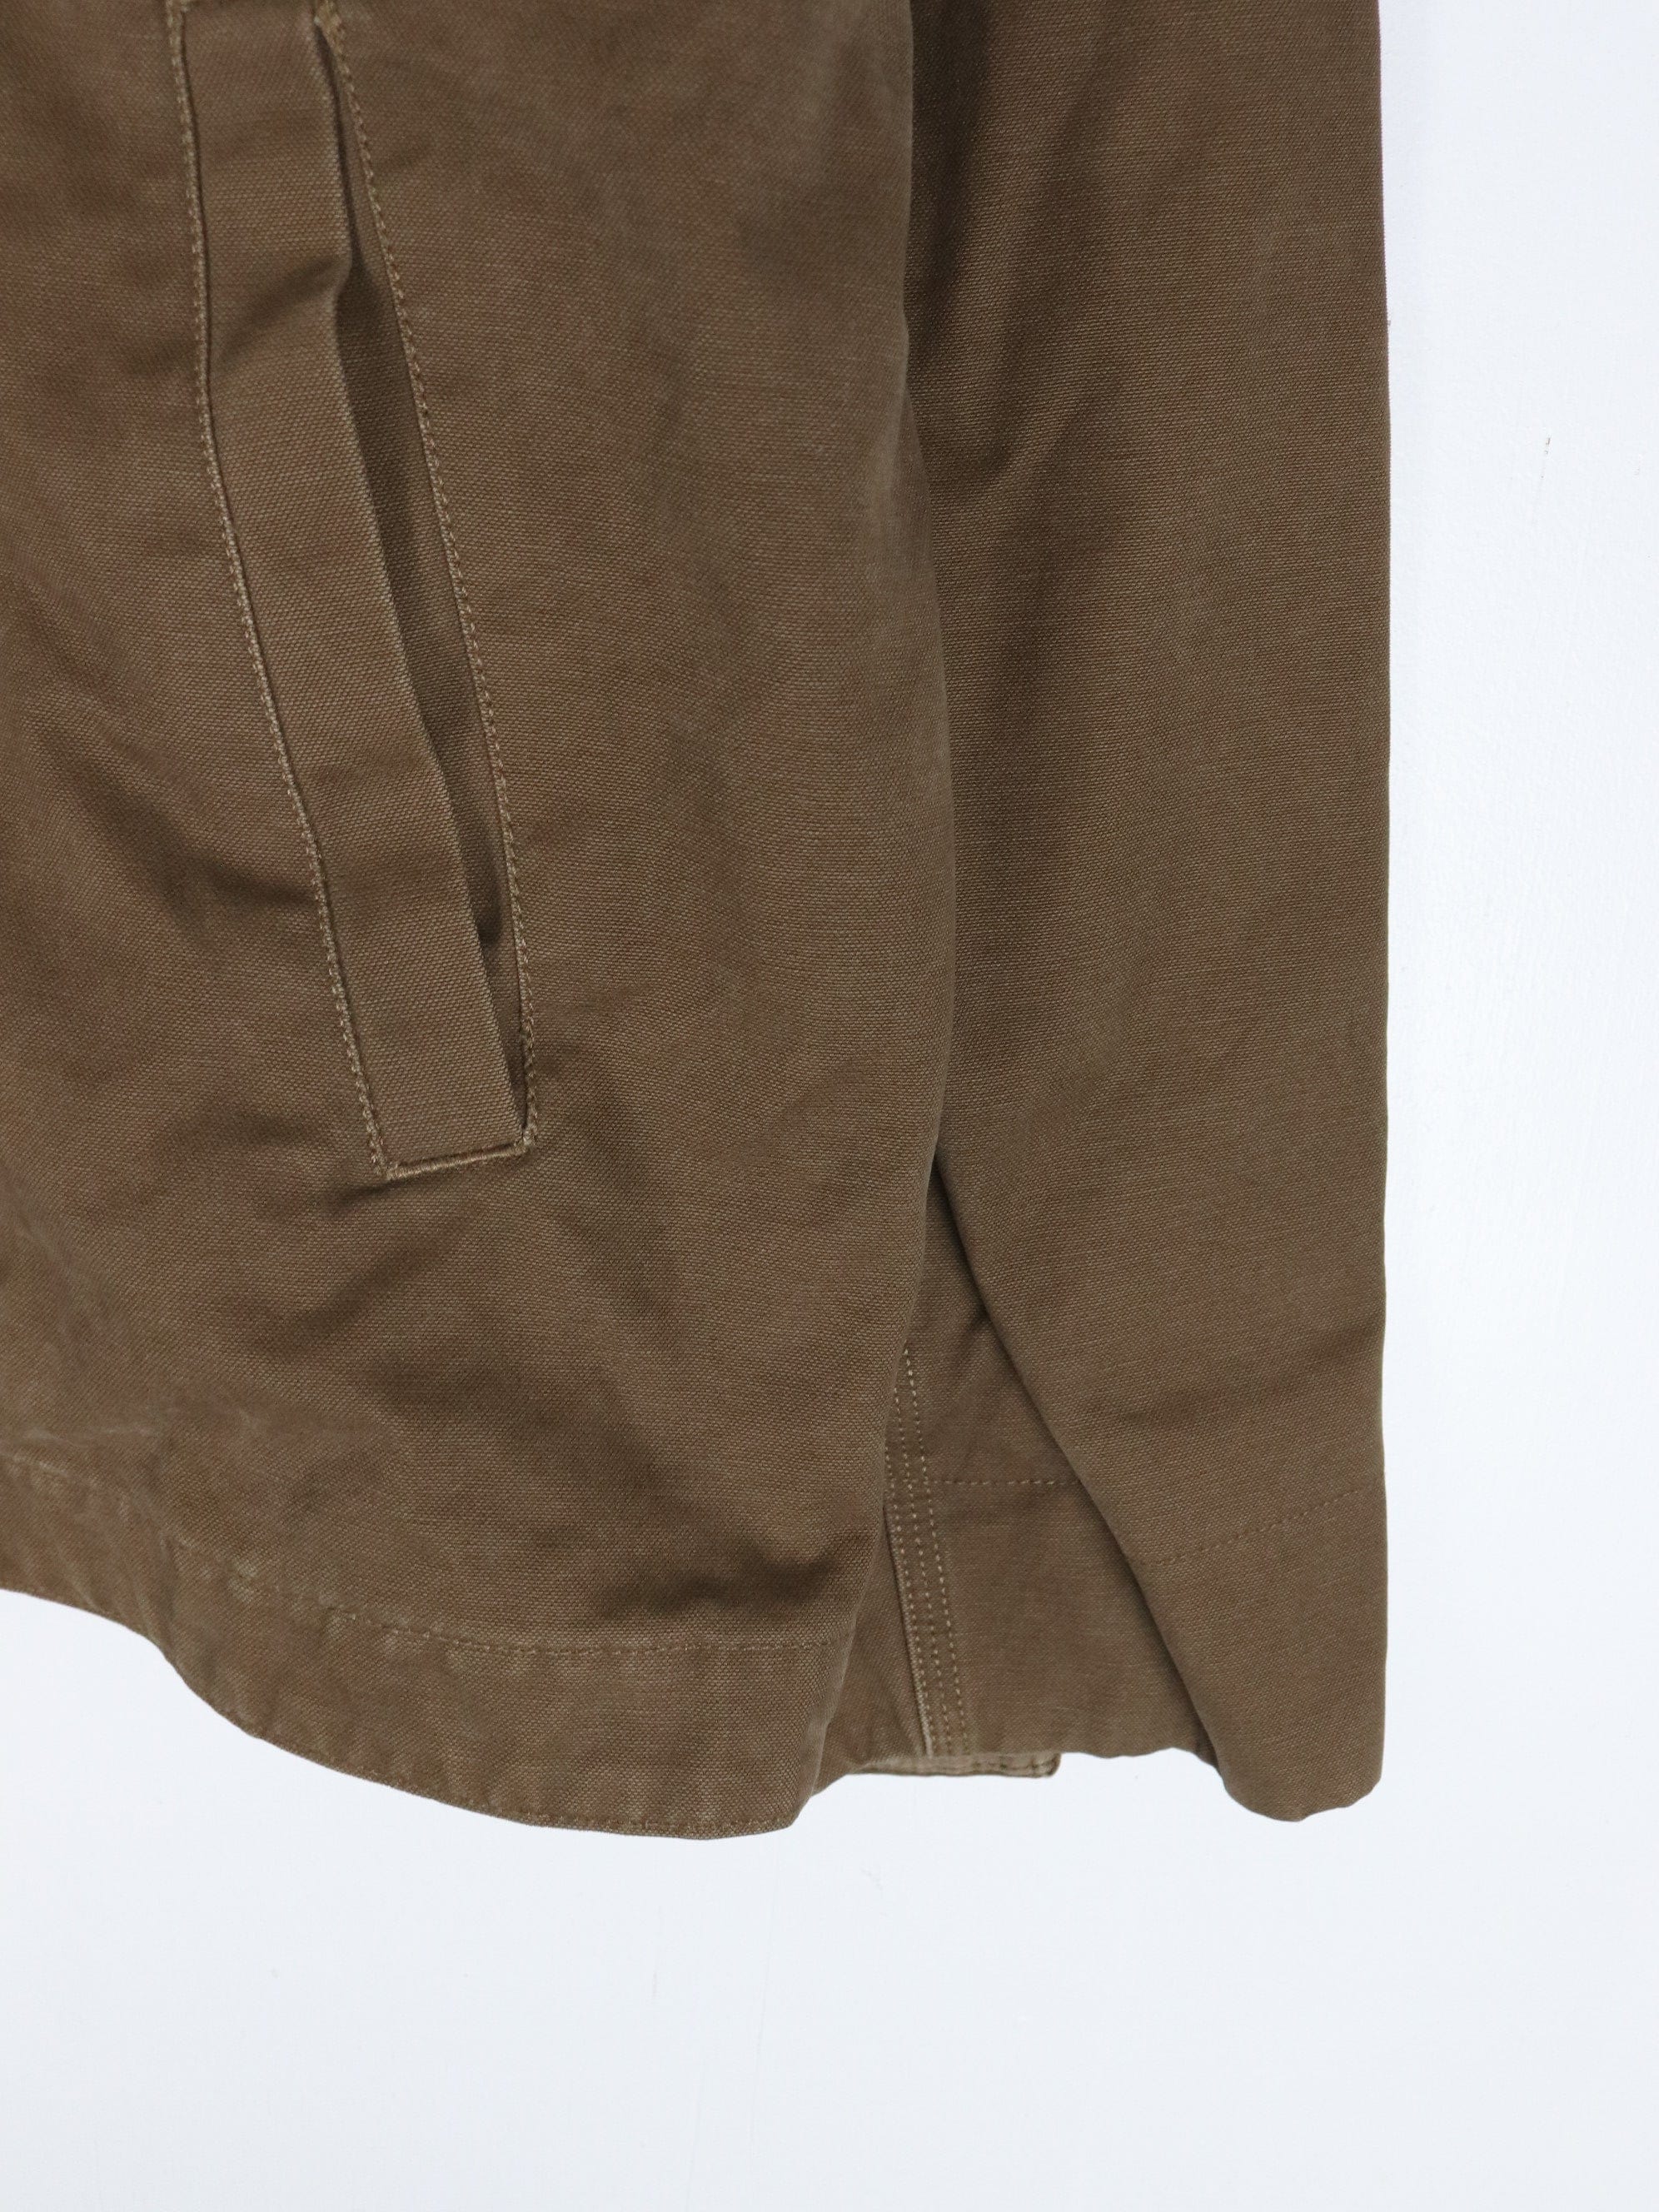 Vintage Gap Jacket Mens Large Brown Coat – Proper Vintage